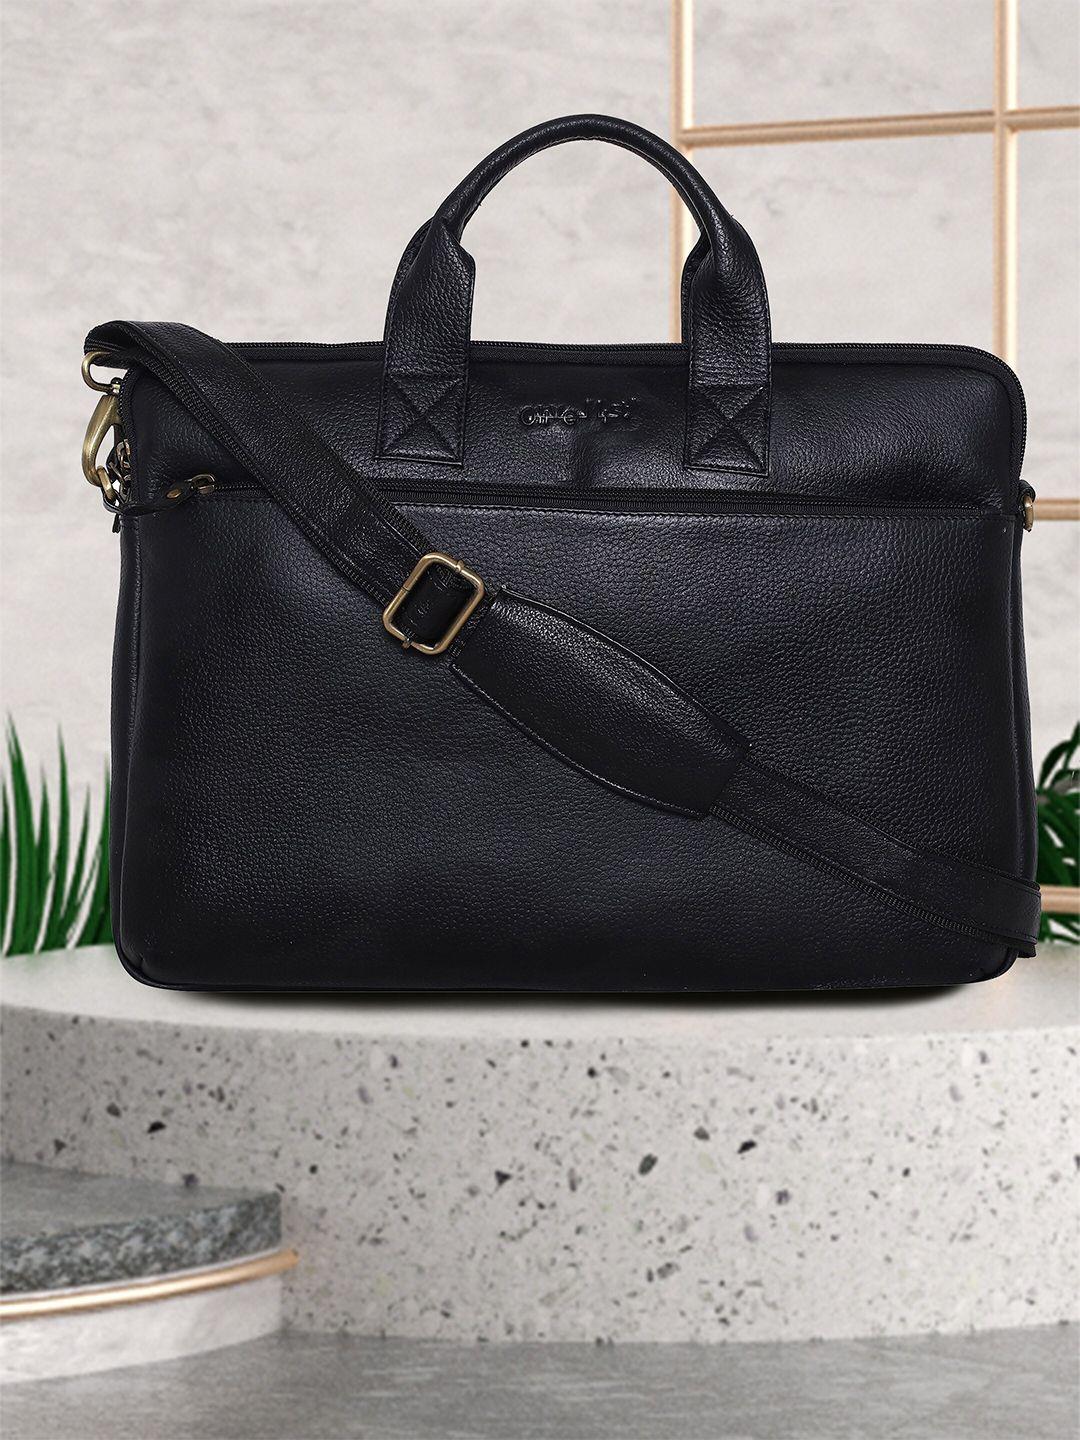 olive mist unisex black & gold-toned leather laptop bag